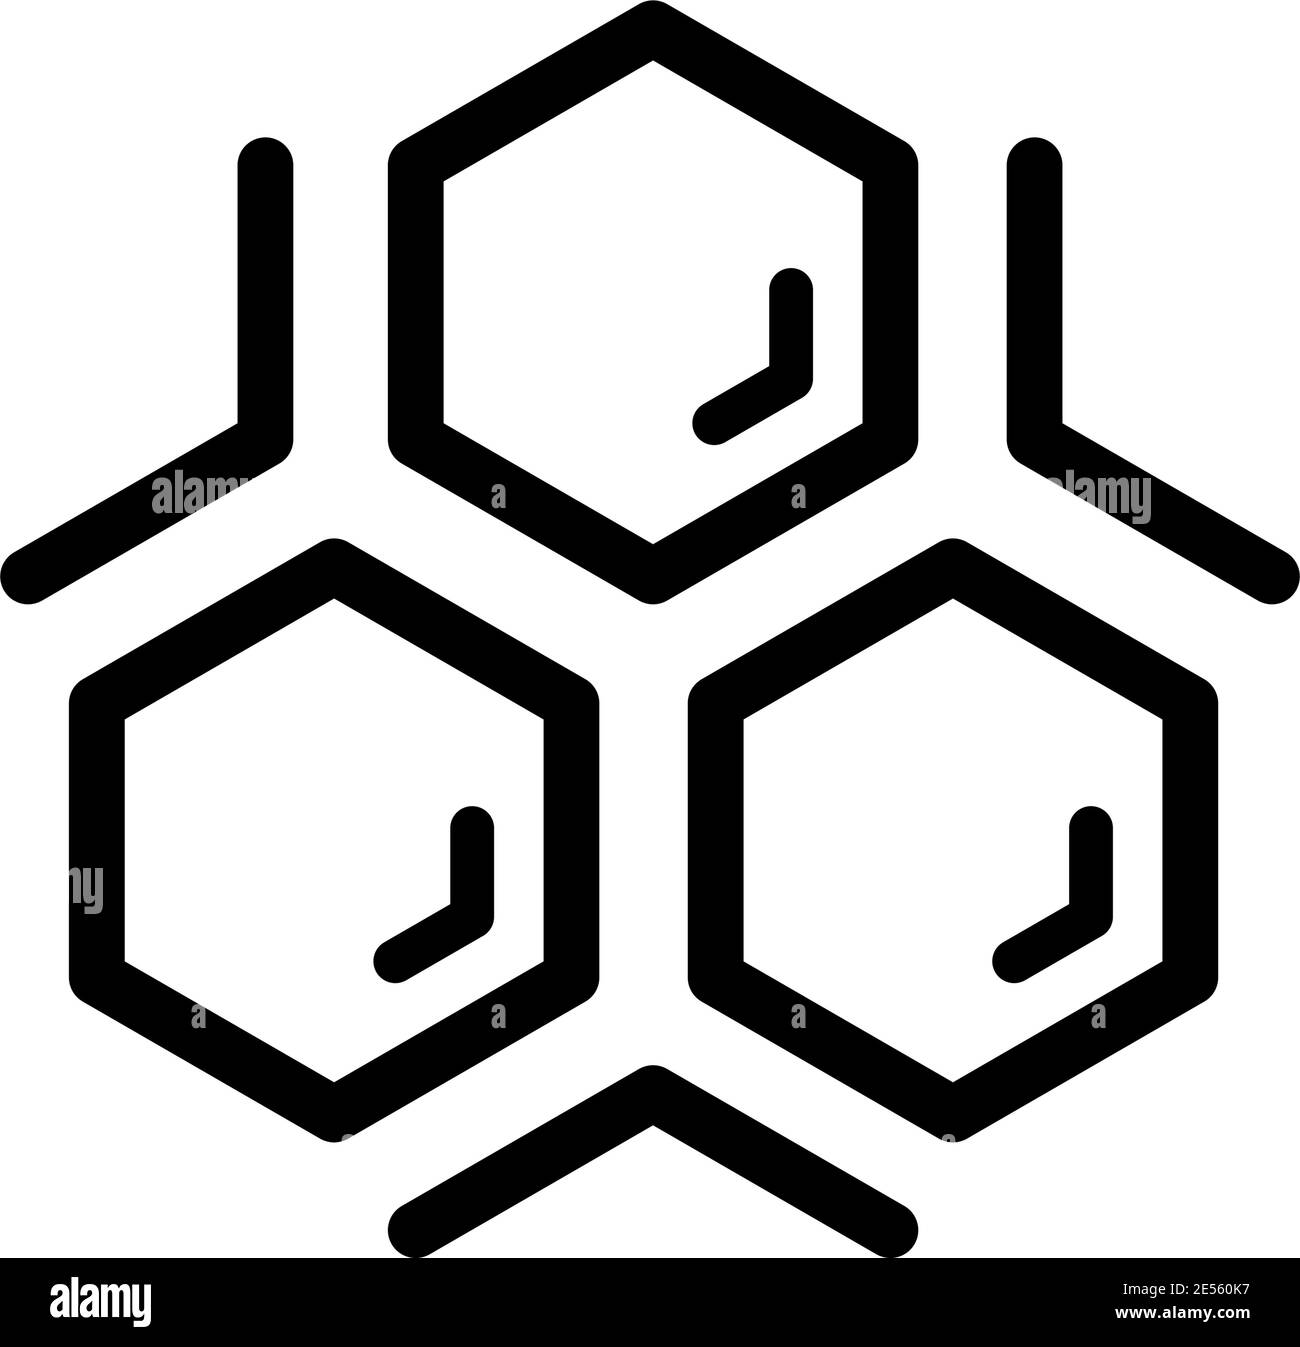 Vecteur contour icône illustration logo pour le miel, nectar d'abeille. Motif de miel composé de produit naturel sucré abeilles sauvages Honeycomb. Mangez des miels Illustration de Vecteur